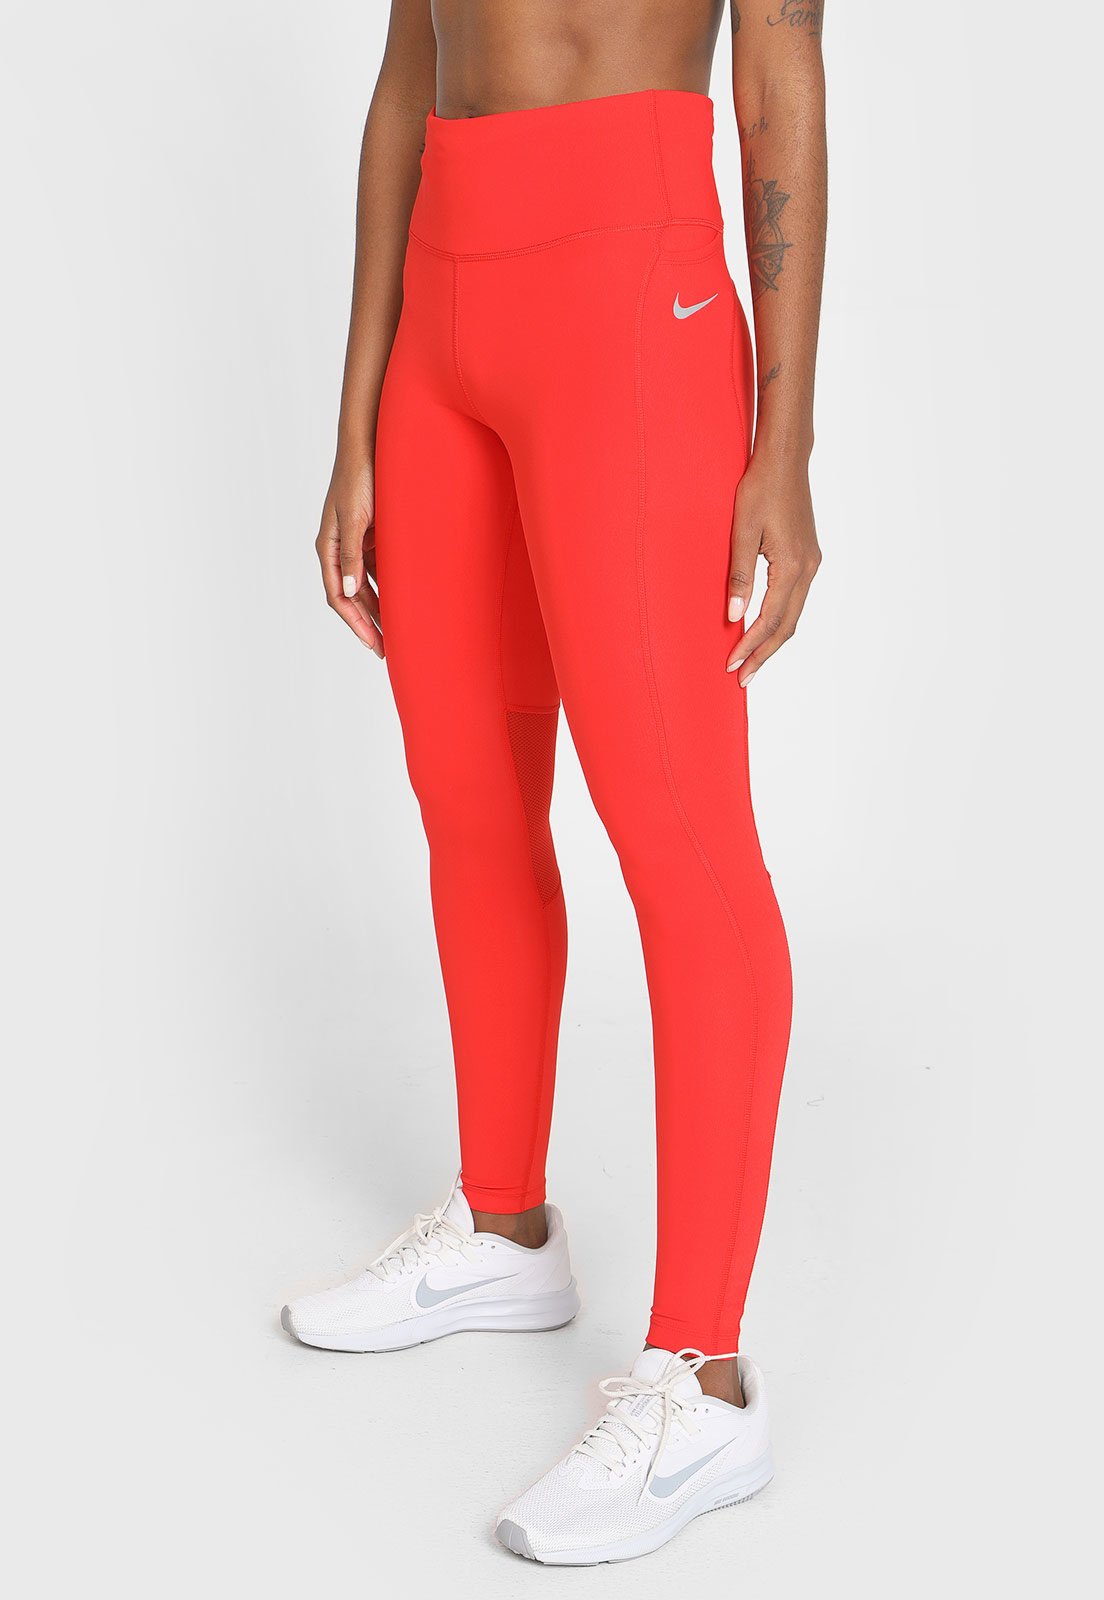 Legging Nike Dri-FIT Epic Fast Feminina - Faz a Boa!